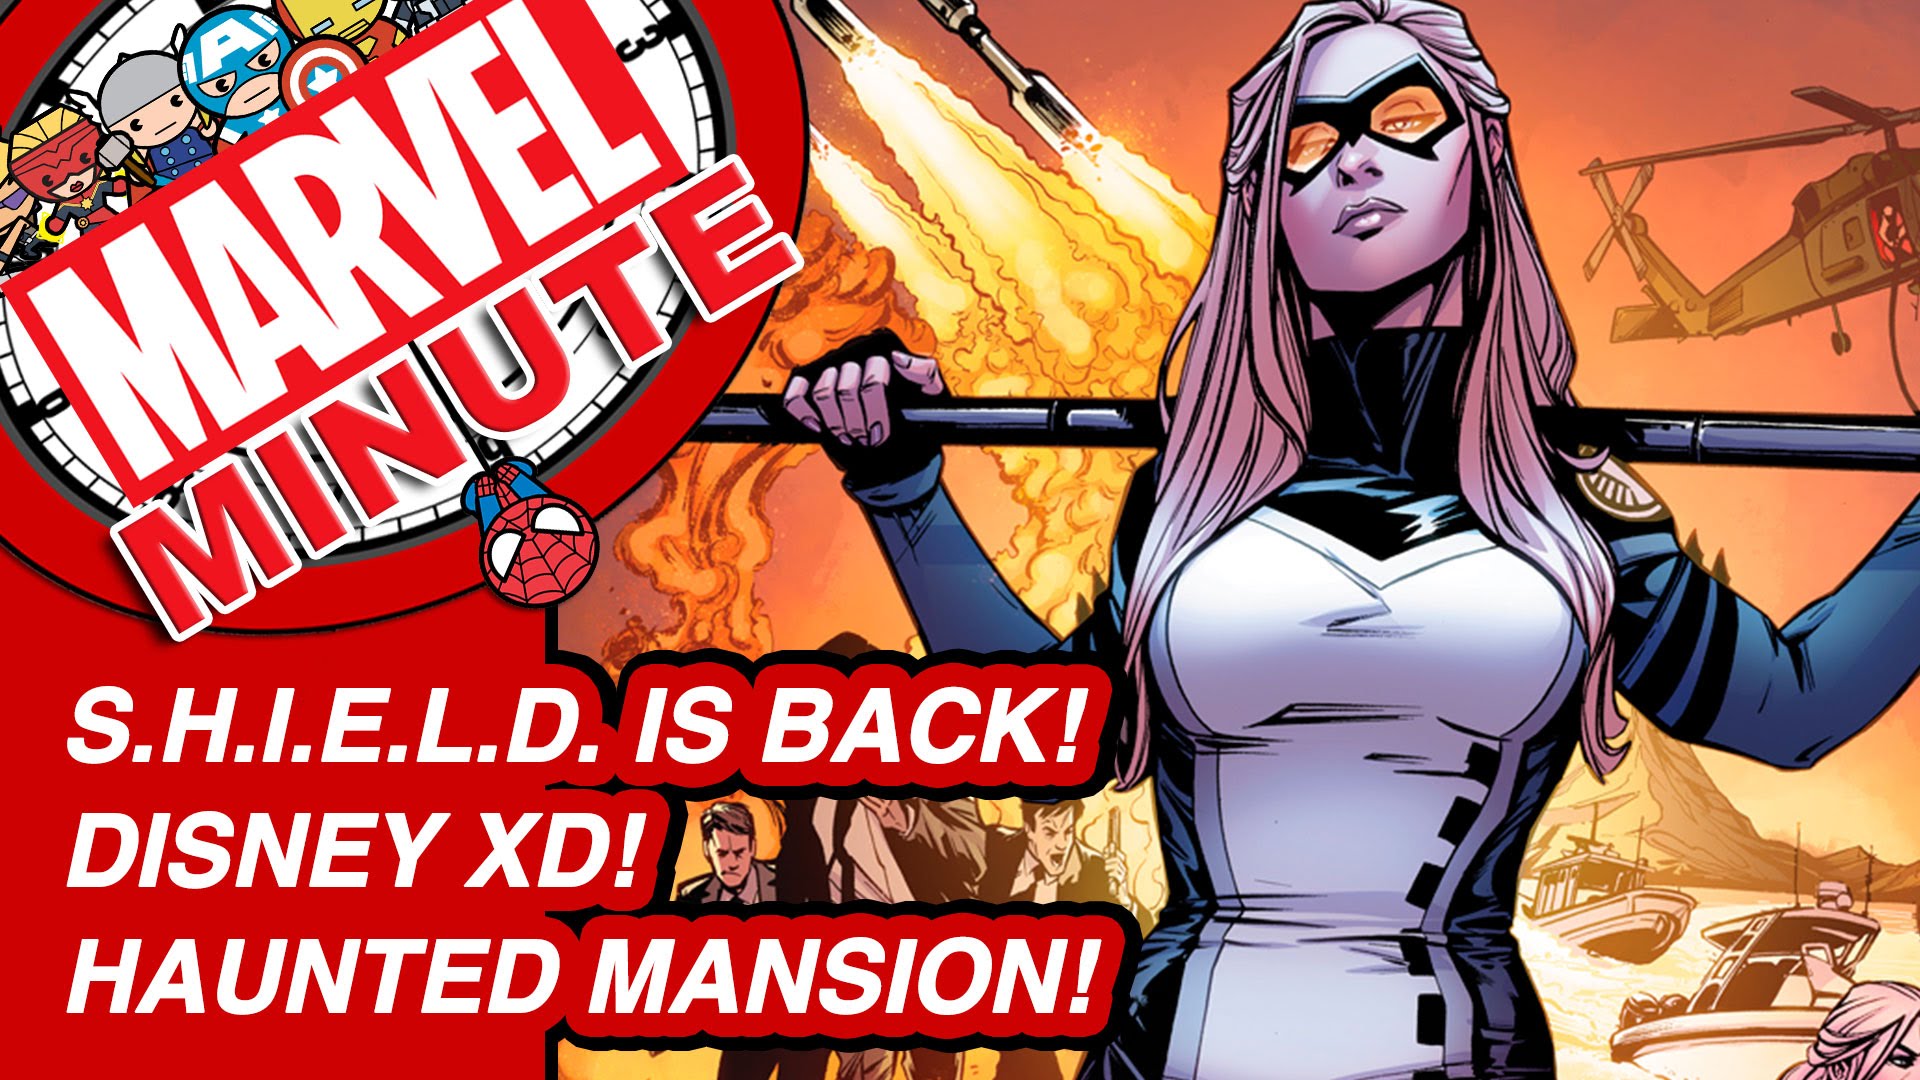 S.H.I.E.L.D. is back! Disney XD! Haunted Mansion! - Marvel Minute 2016